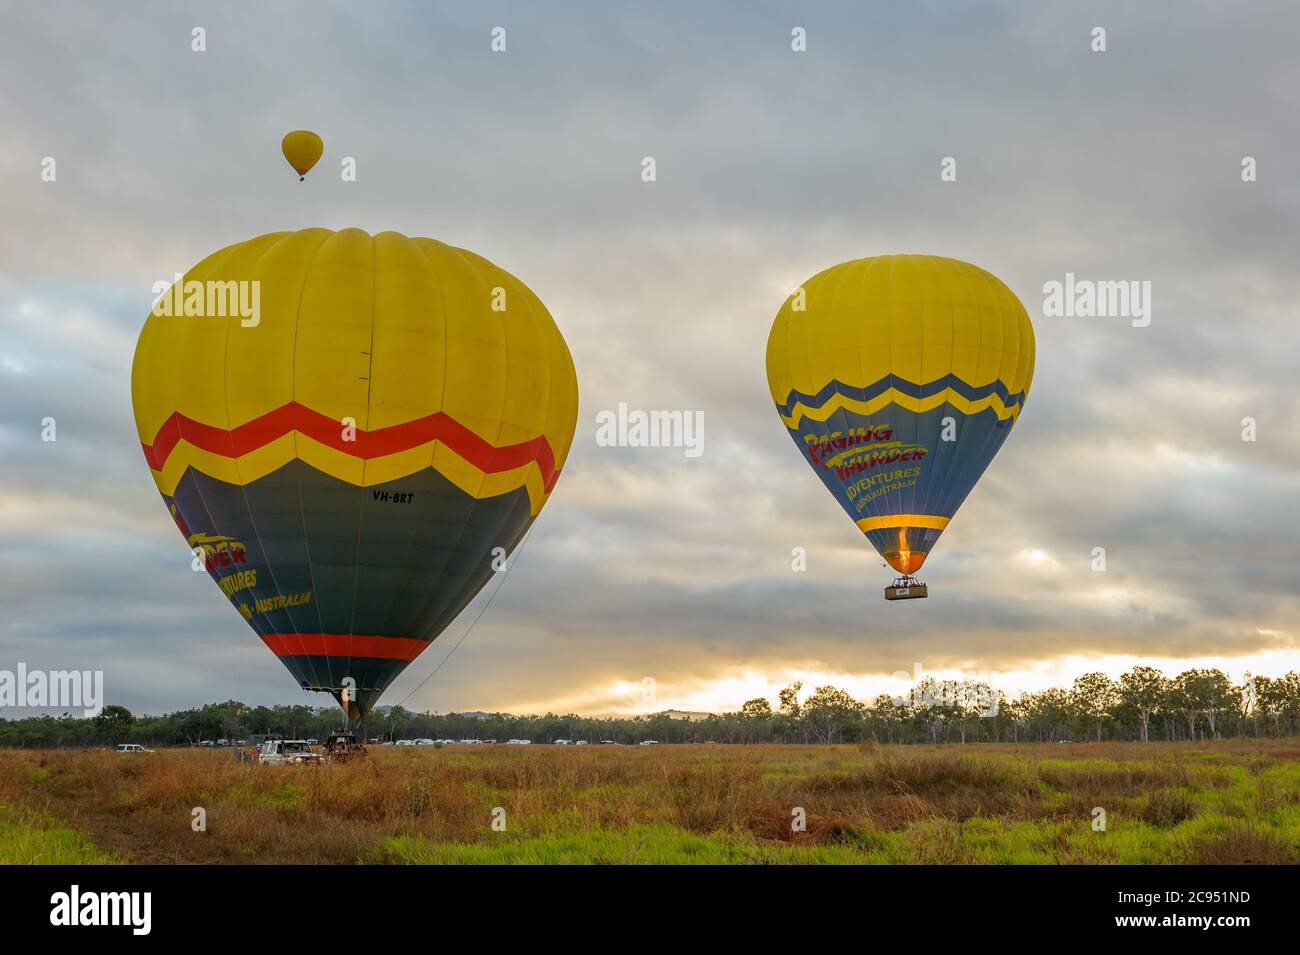 Als die Sonne aufgeht, beginnen drei bunte Luftballons mit Touristenkörben ihren Abenteuerflug über Mareeba in Queensland, Australien. Stockfoto